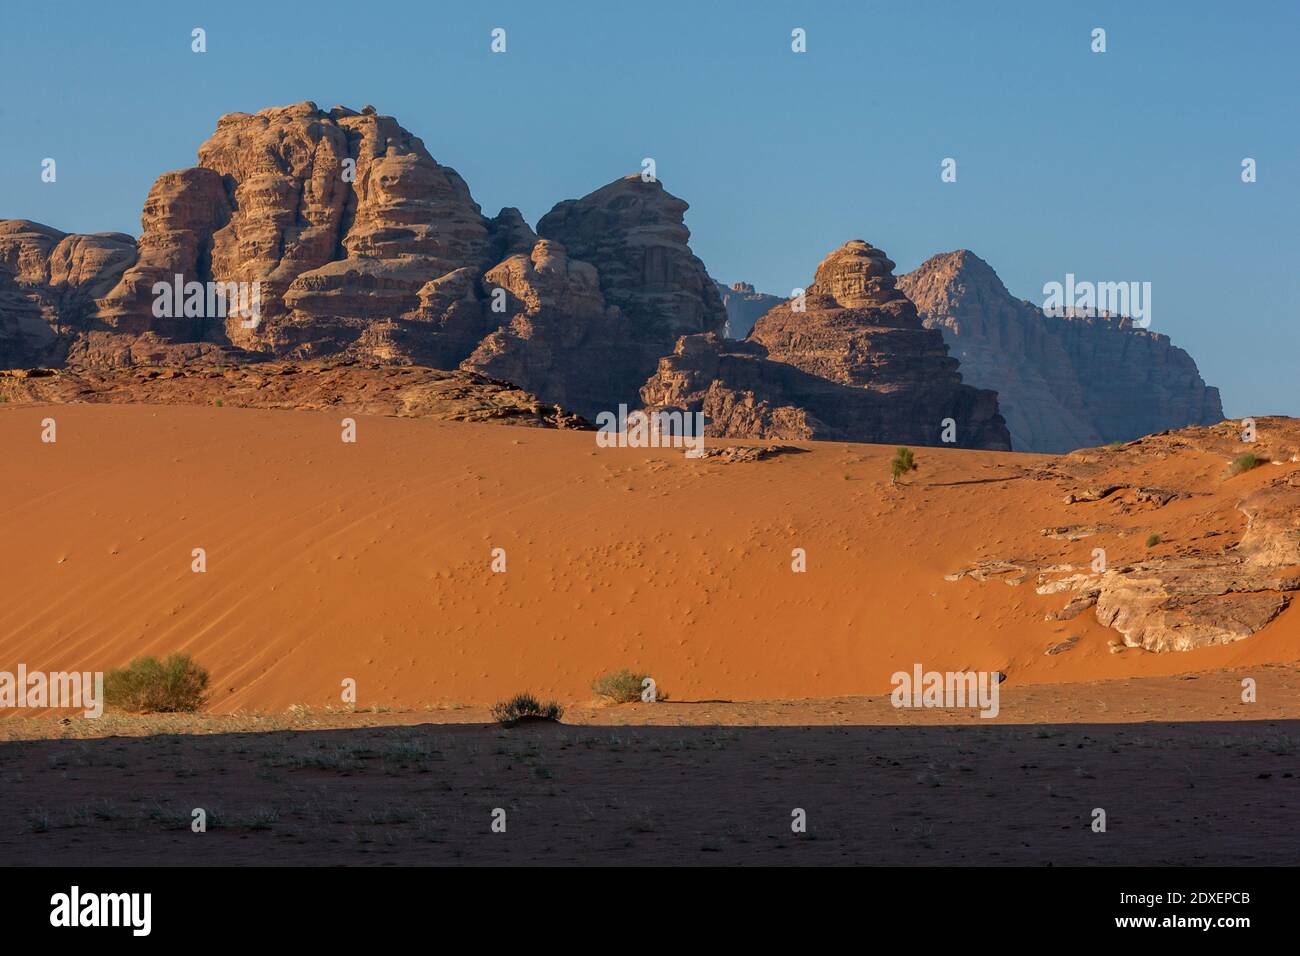 Die Sonne geht über einem Teil des Wadi Rum in Jordanien auf. Auch bekannt als das Tal des Mondes, ist Wadi Rum ein Tal, das in den Sandstein- und Granitfelsen geschnitten ist Stockfoto